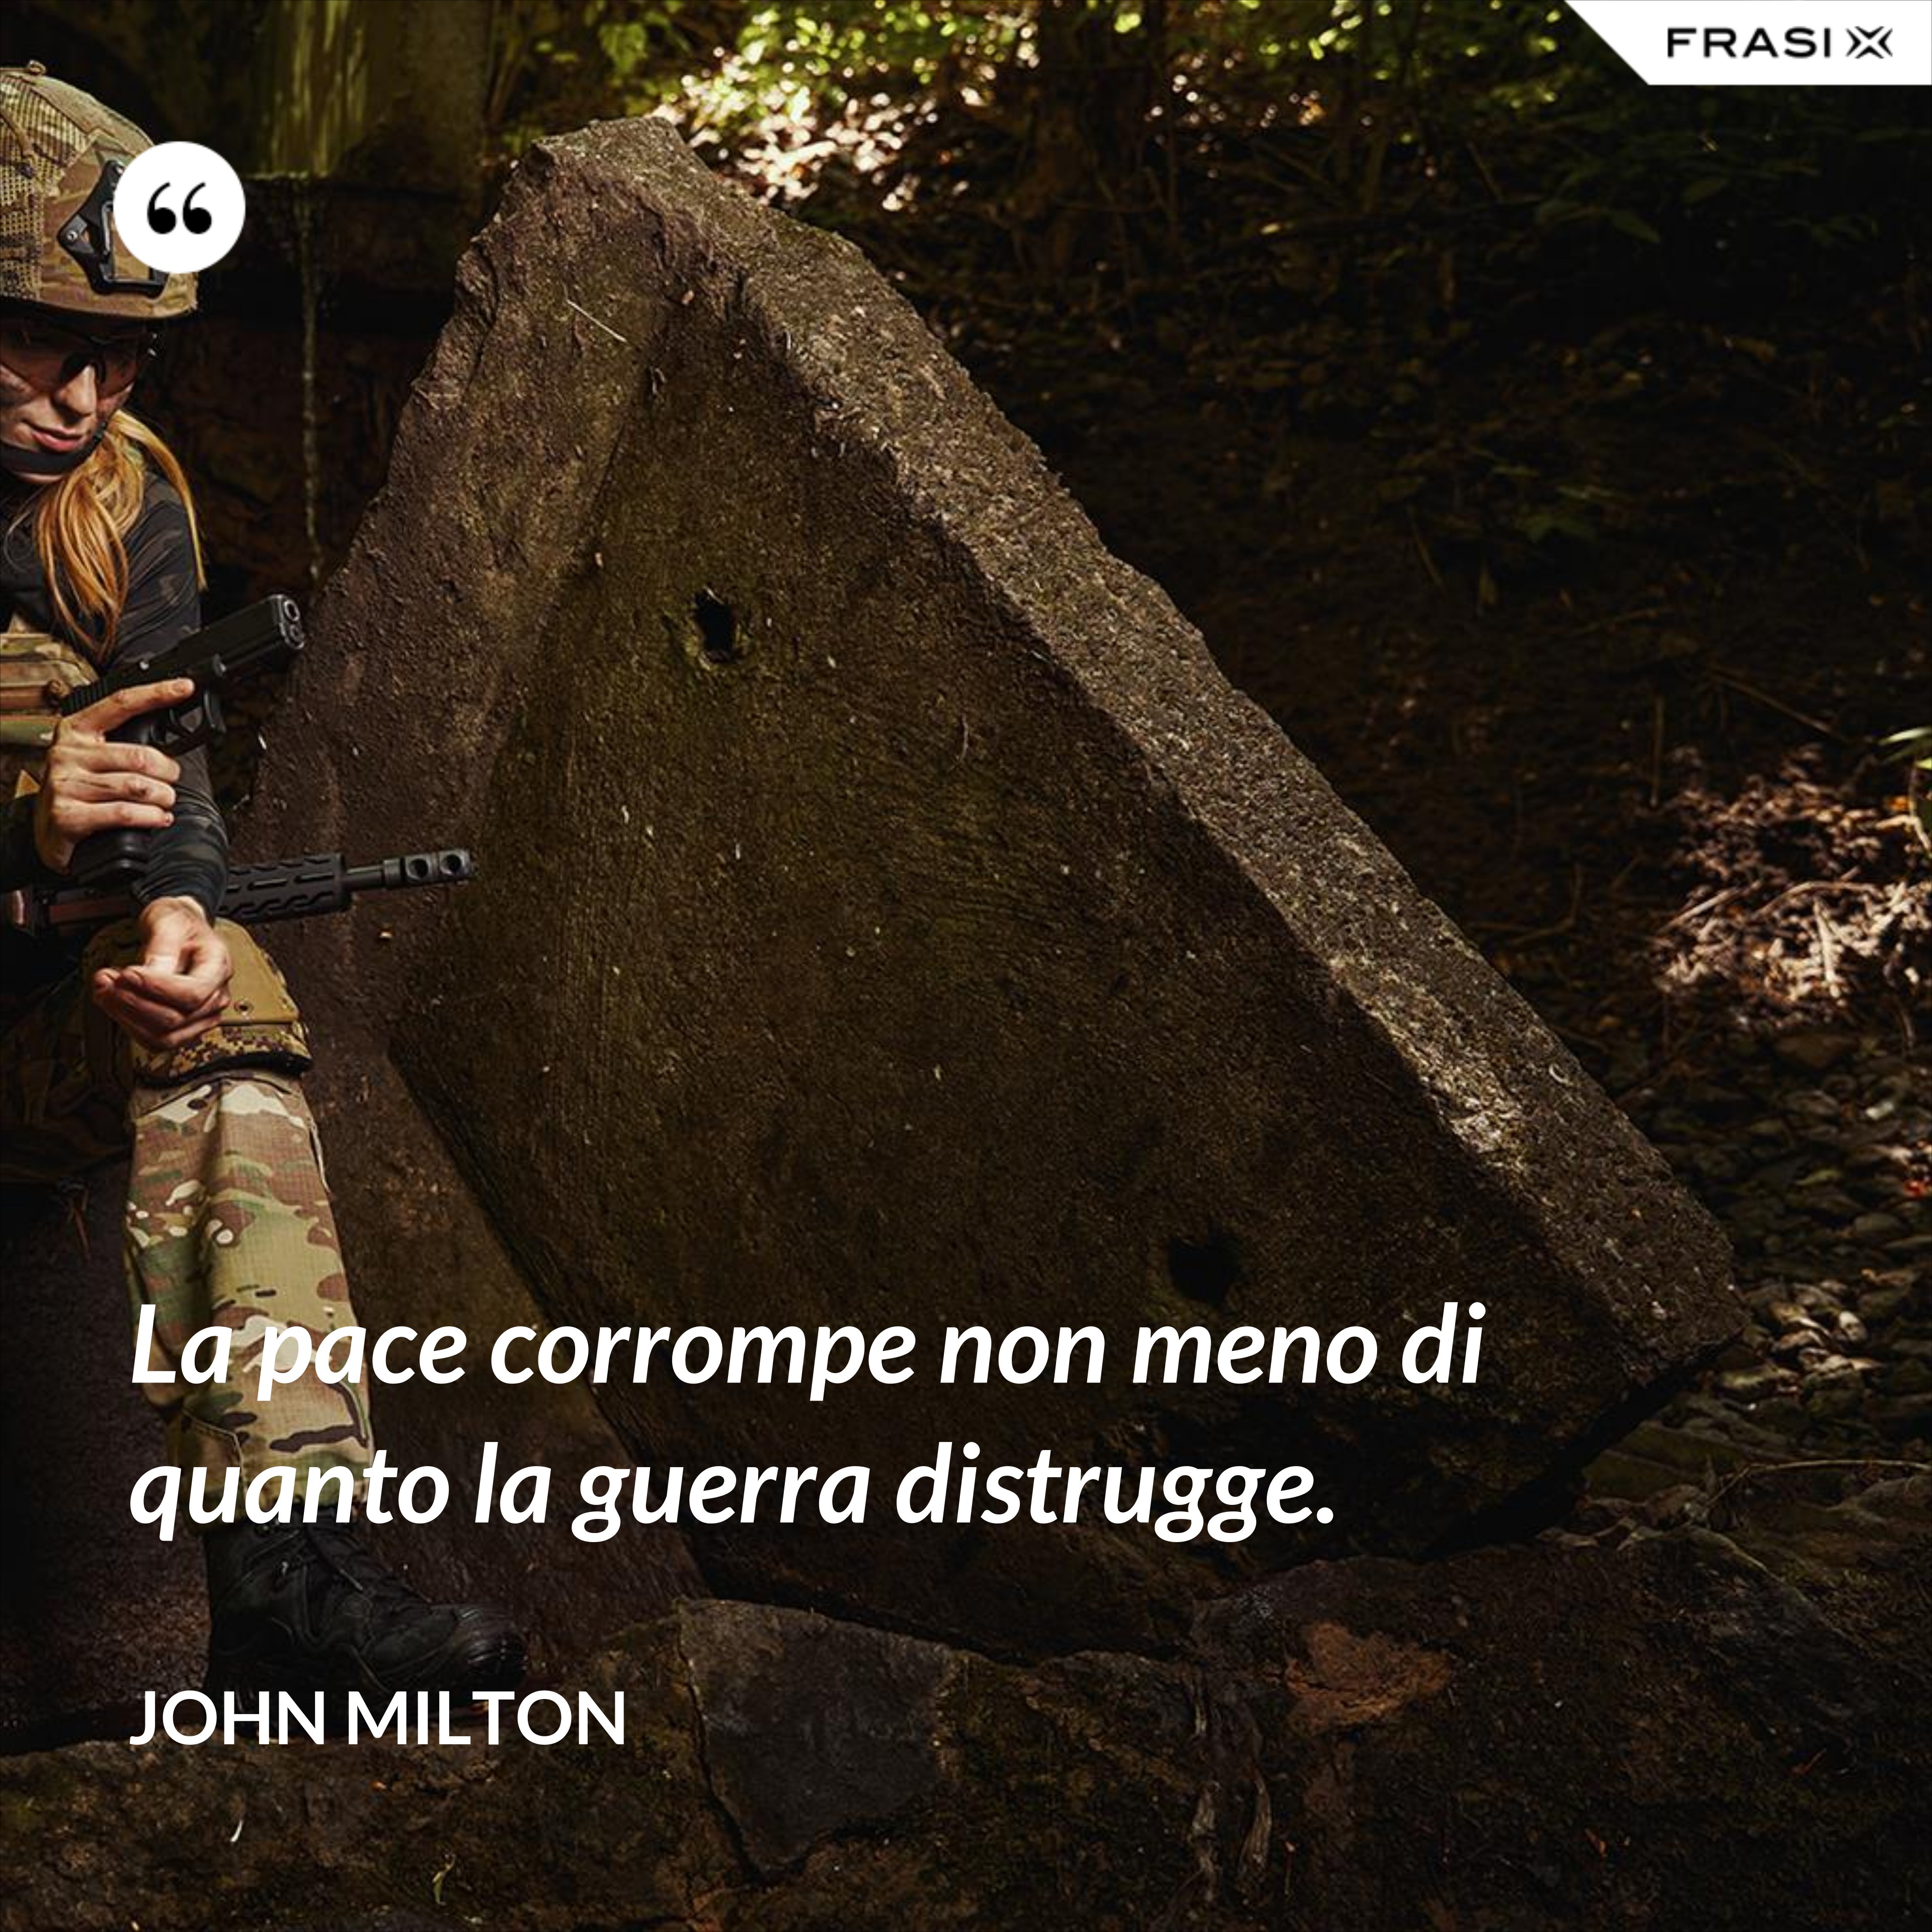 La pace corrompe non meno di quanto la guerra distrugge. - John Milton